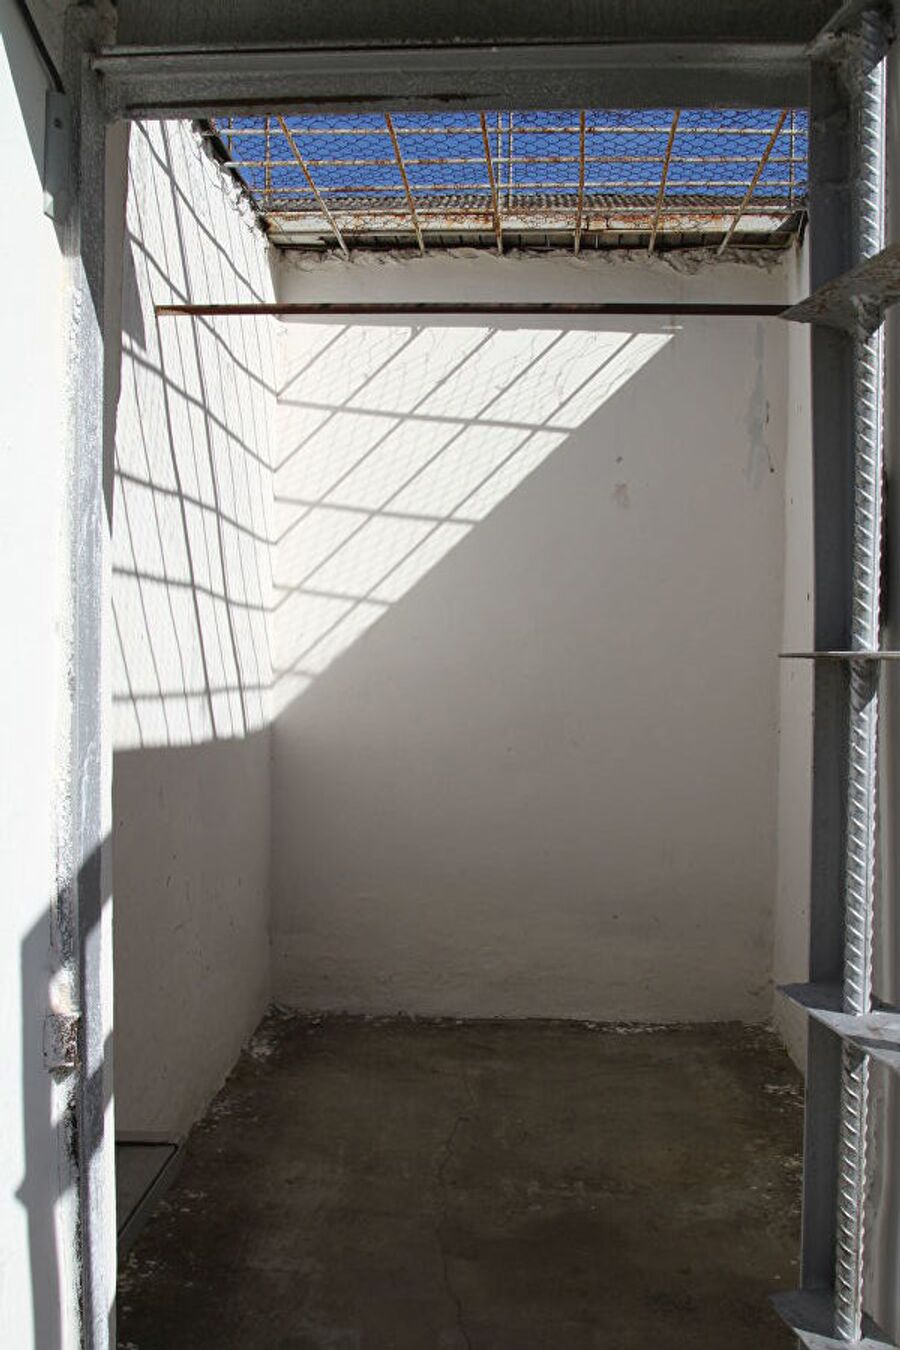  Прогулочные дворики в колонии для пожизненных заключенных